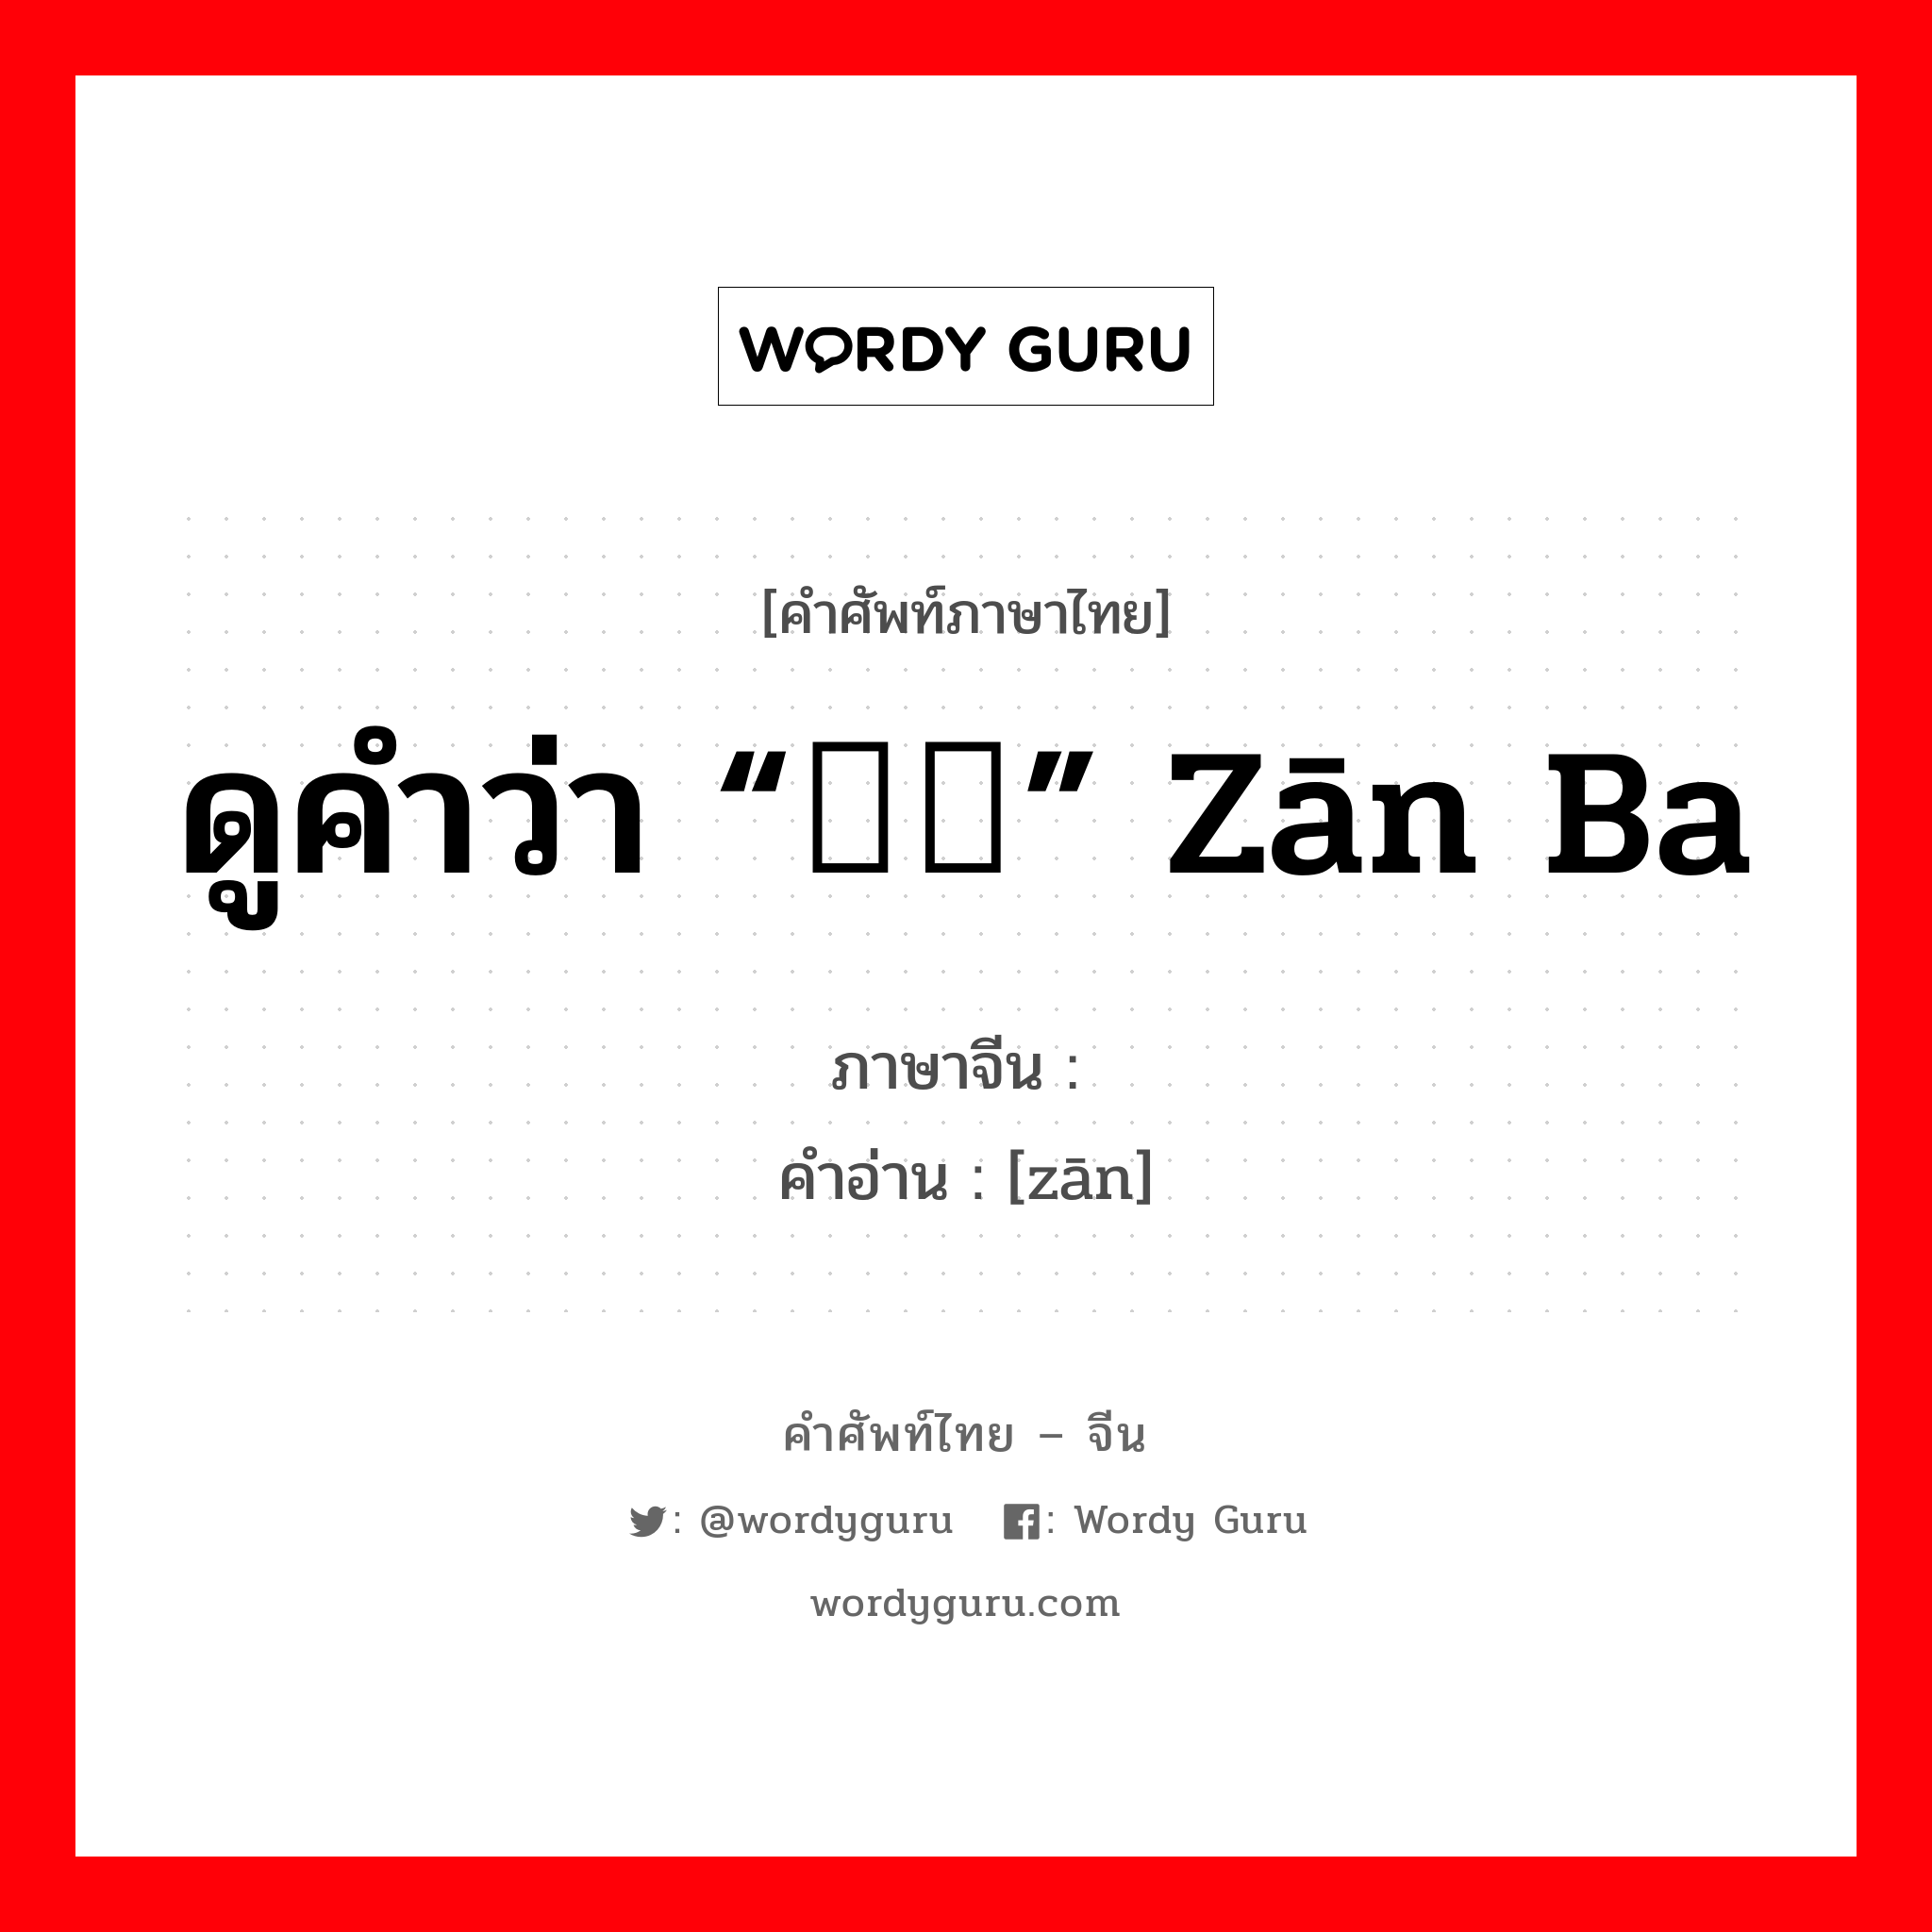 ดูคำว่า “糌粑” zān ba ภาษาจีนคืออะไร, คำศัพท์ภาษาไทย - จีน ดูคำว่า “糌粑” zān ba ภาษาจีน 糌 คำอ่าน [zān]